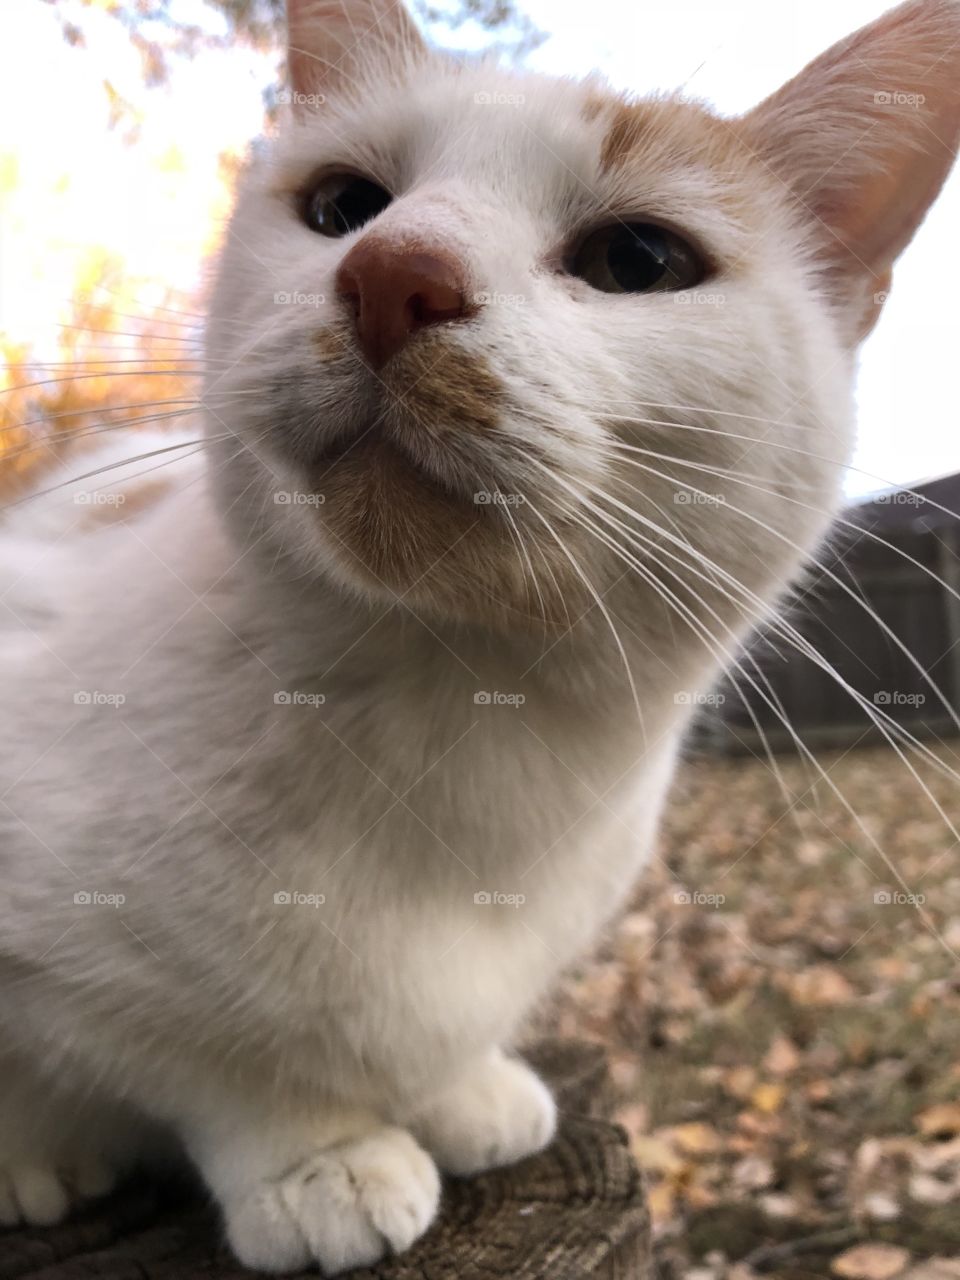 Feline friend outdoors